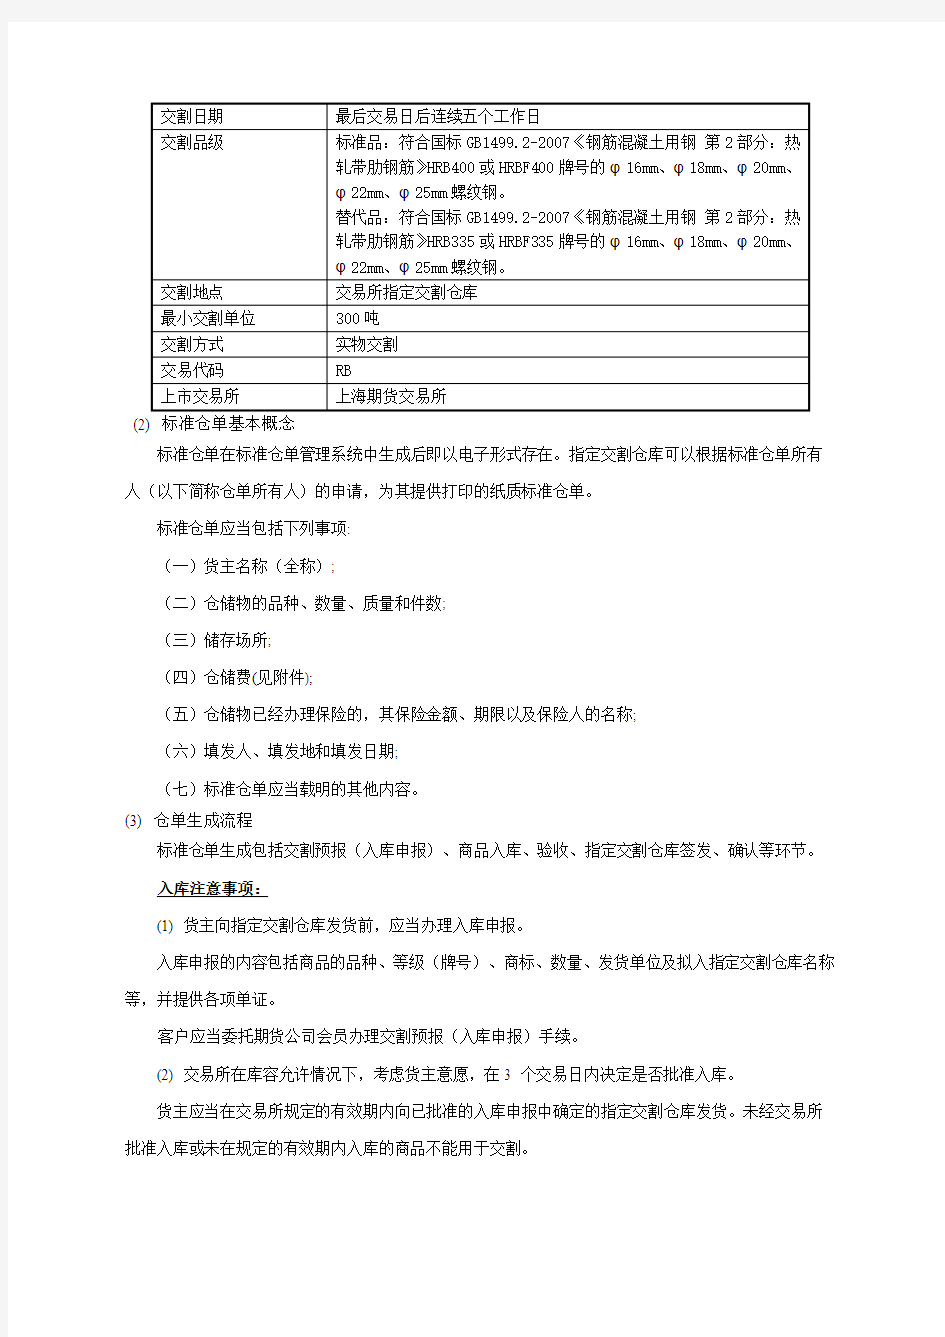 上海交易所螺纹钢标准仓单质押融资指导手册(第2版)(1)